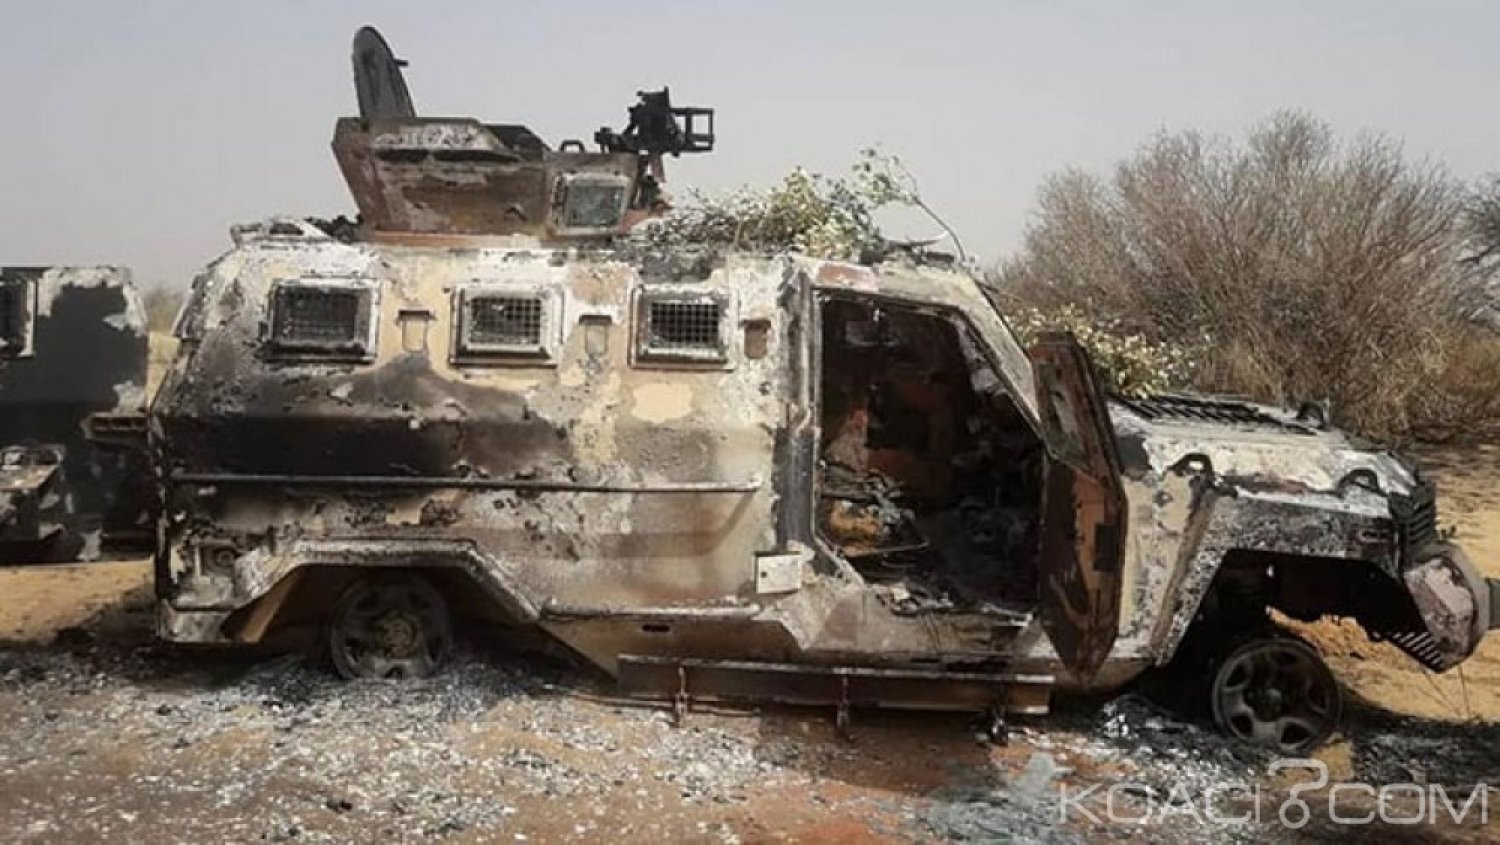 Mali: Une patrouille de l'armée tombe dans une embuscade près de Diafarabé, 04 morts